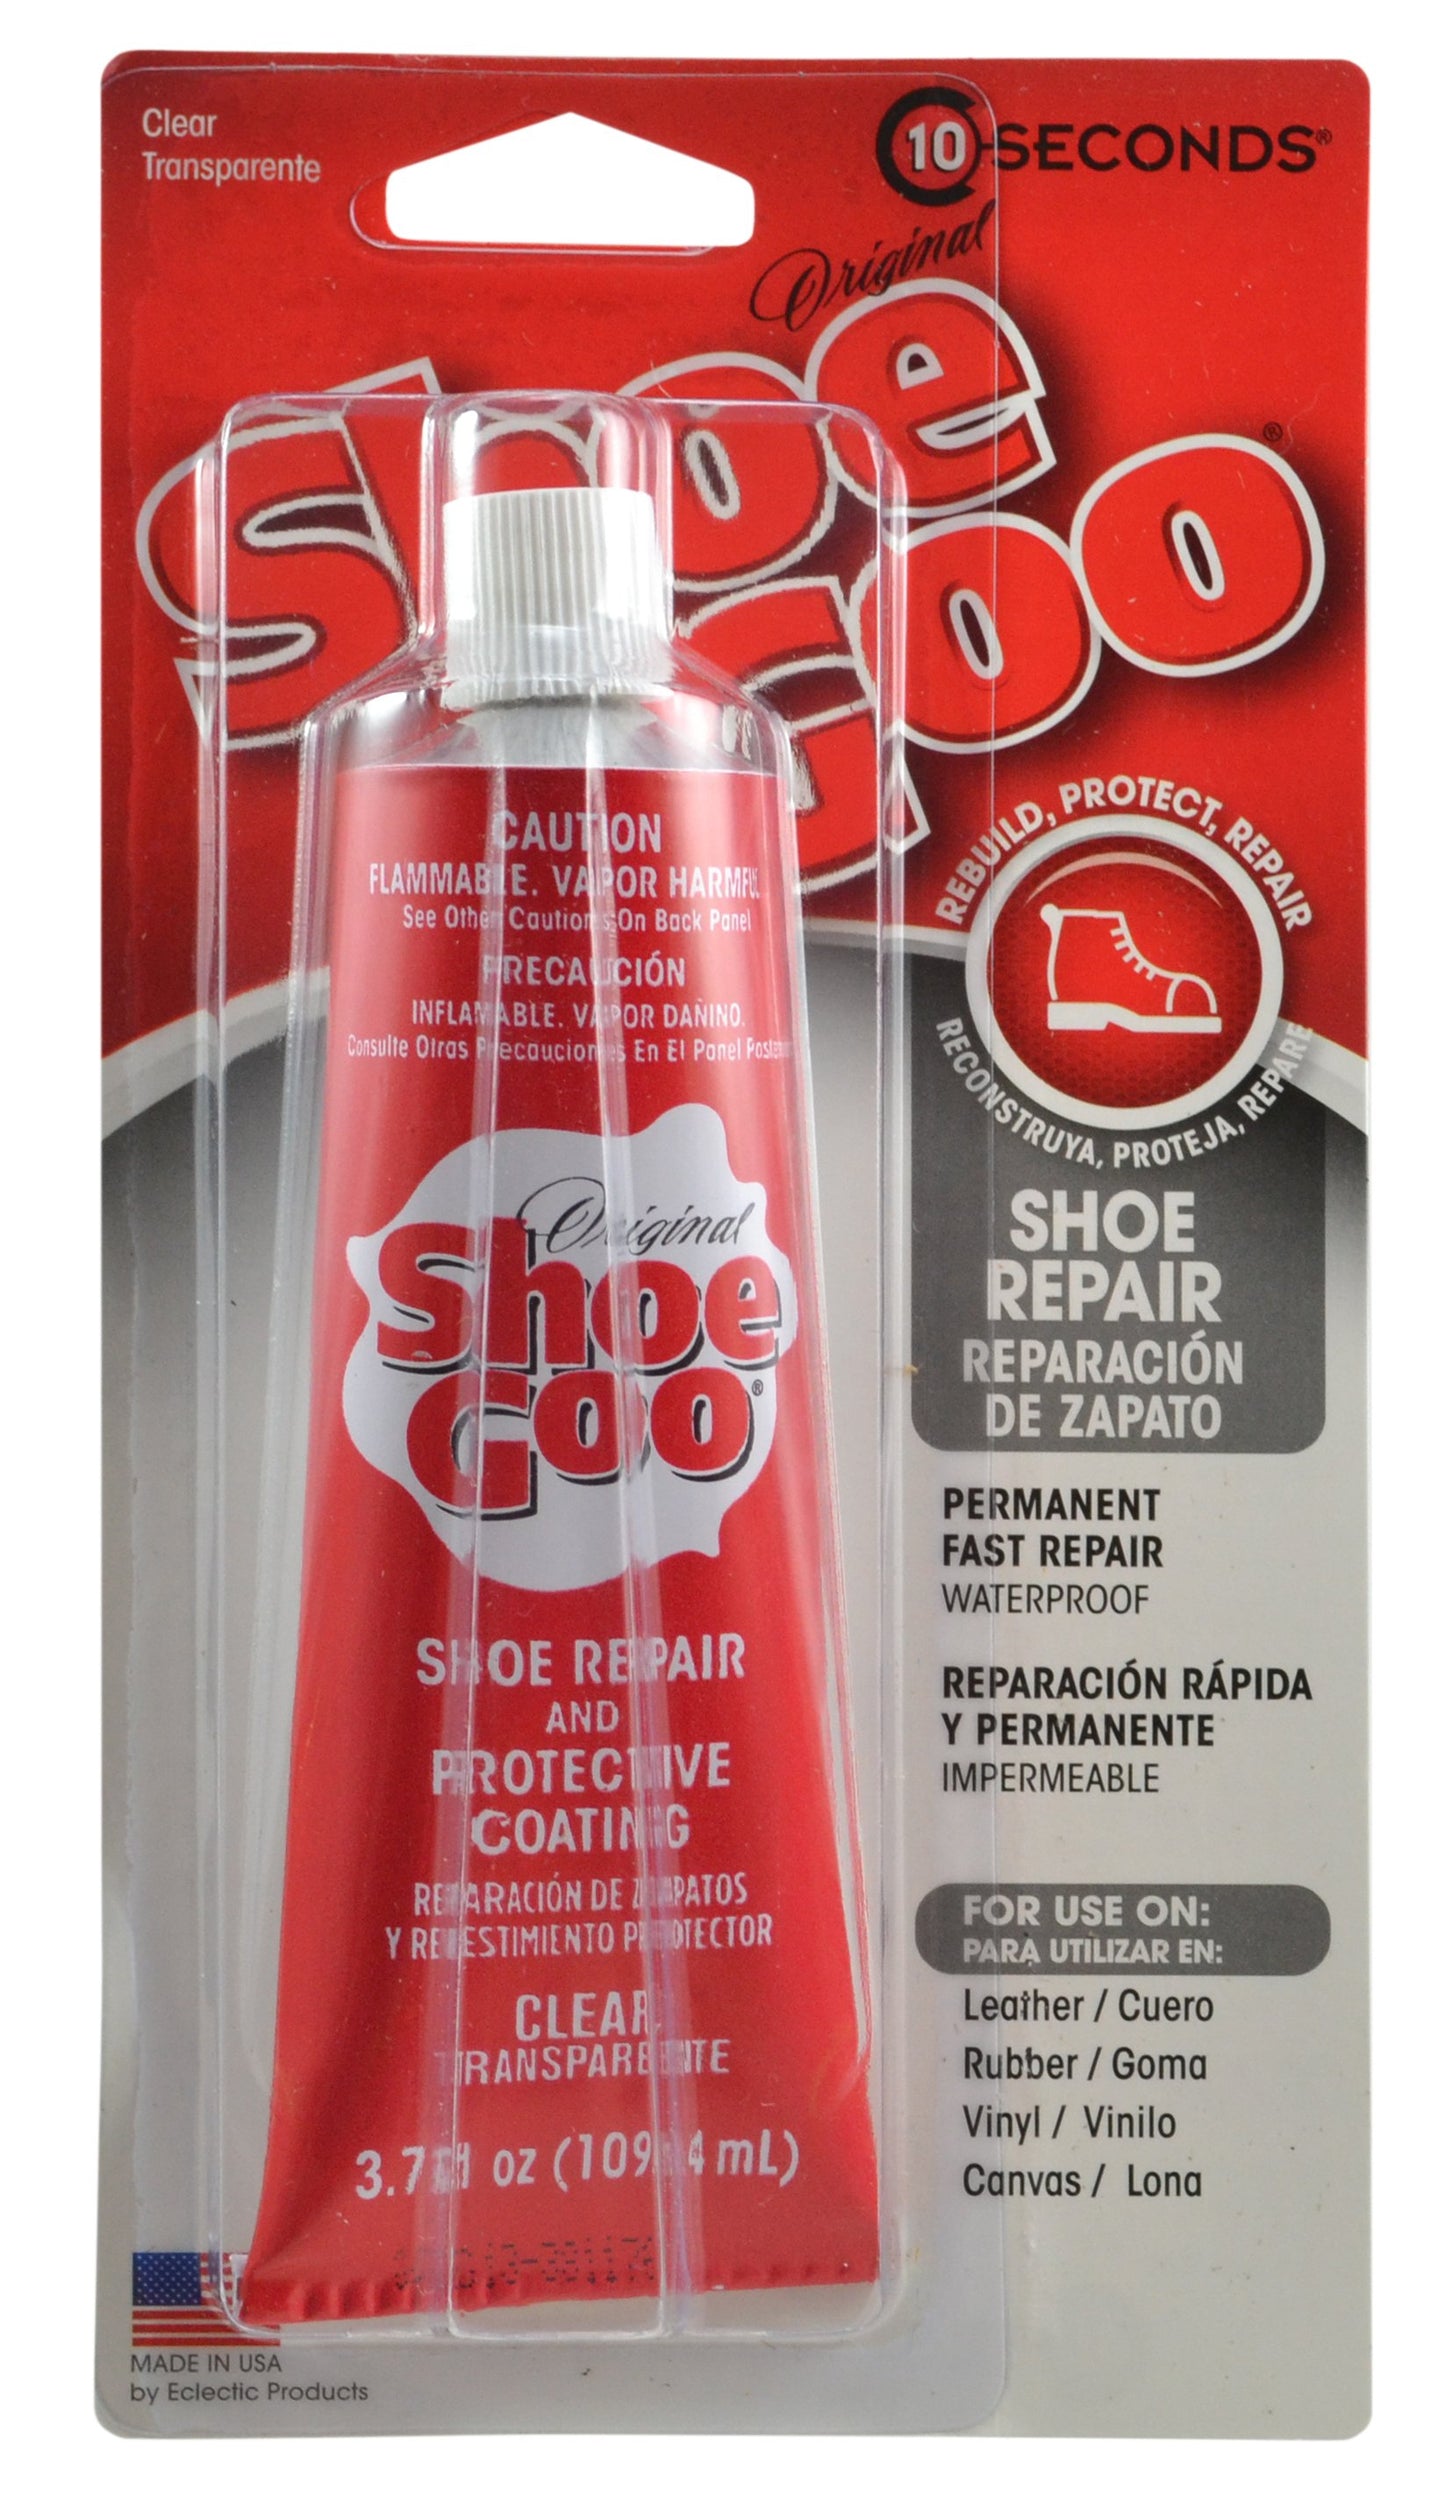 10 Seconds ® Shoe Goo